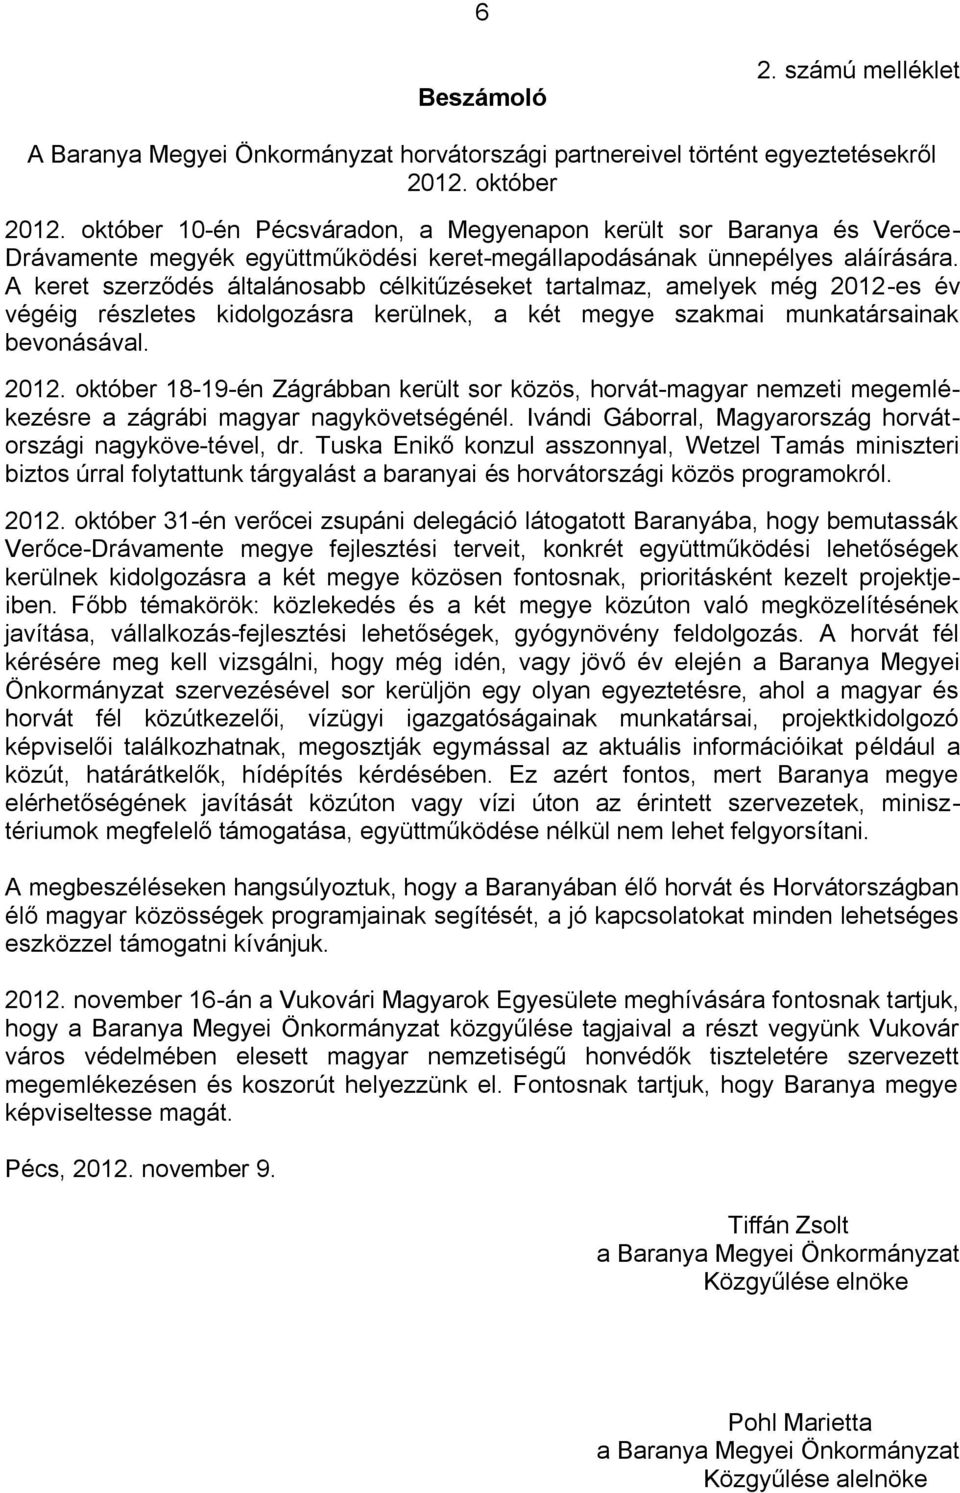 A keret szerződés általánosabb célkitűzéseket tartalmaz, amelyek még 2012-es év végéig részletes kidolgozásra kerülnek, a két megye szakmai munkatársainak bevonásával. 2012. október 18-19-én Zágrábban került sor közös, horvát-magyar nemzeti megemlékezésre a zágrábi magyar nagykövetségénél.